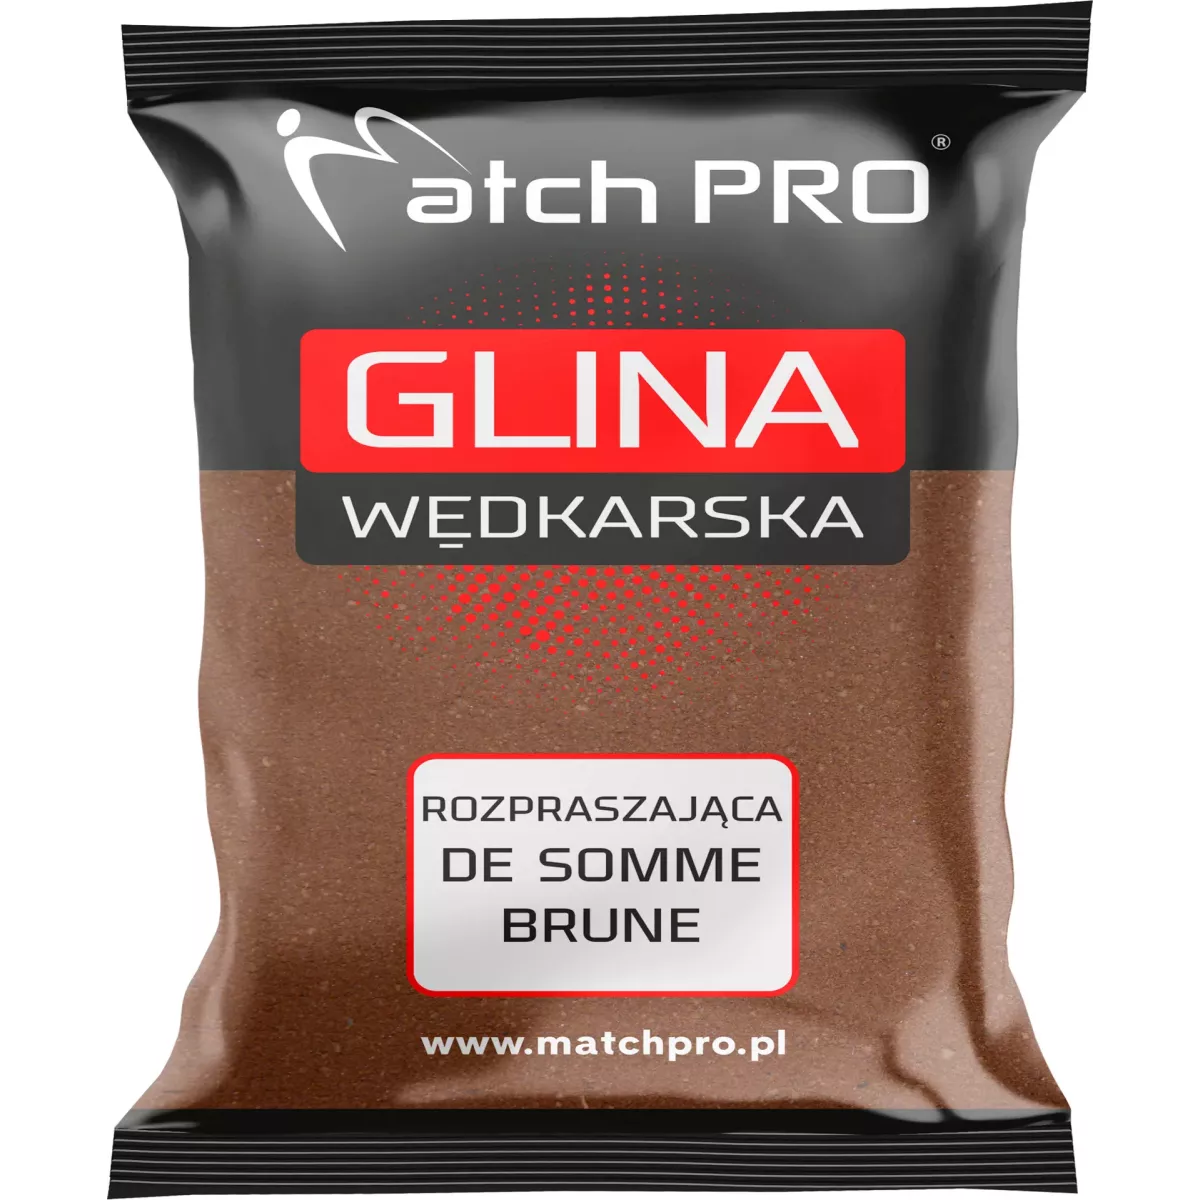 Glina MatchPro 2kg - Rozpraszająca DE SOMME BRUNE Brązowa